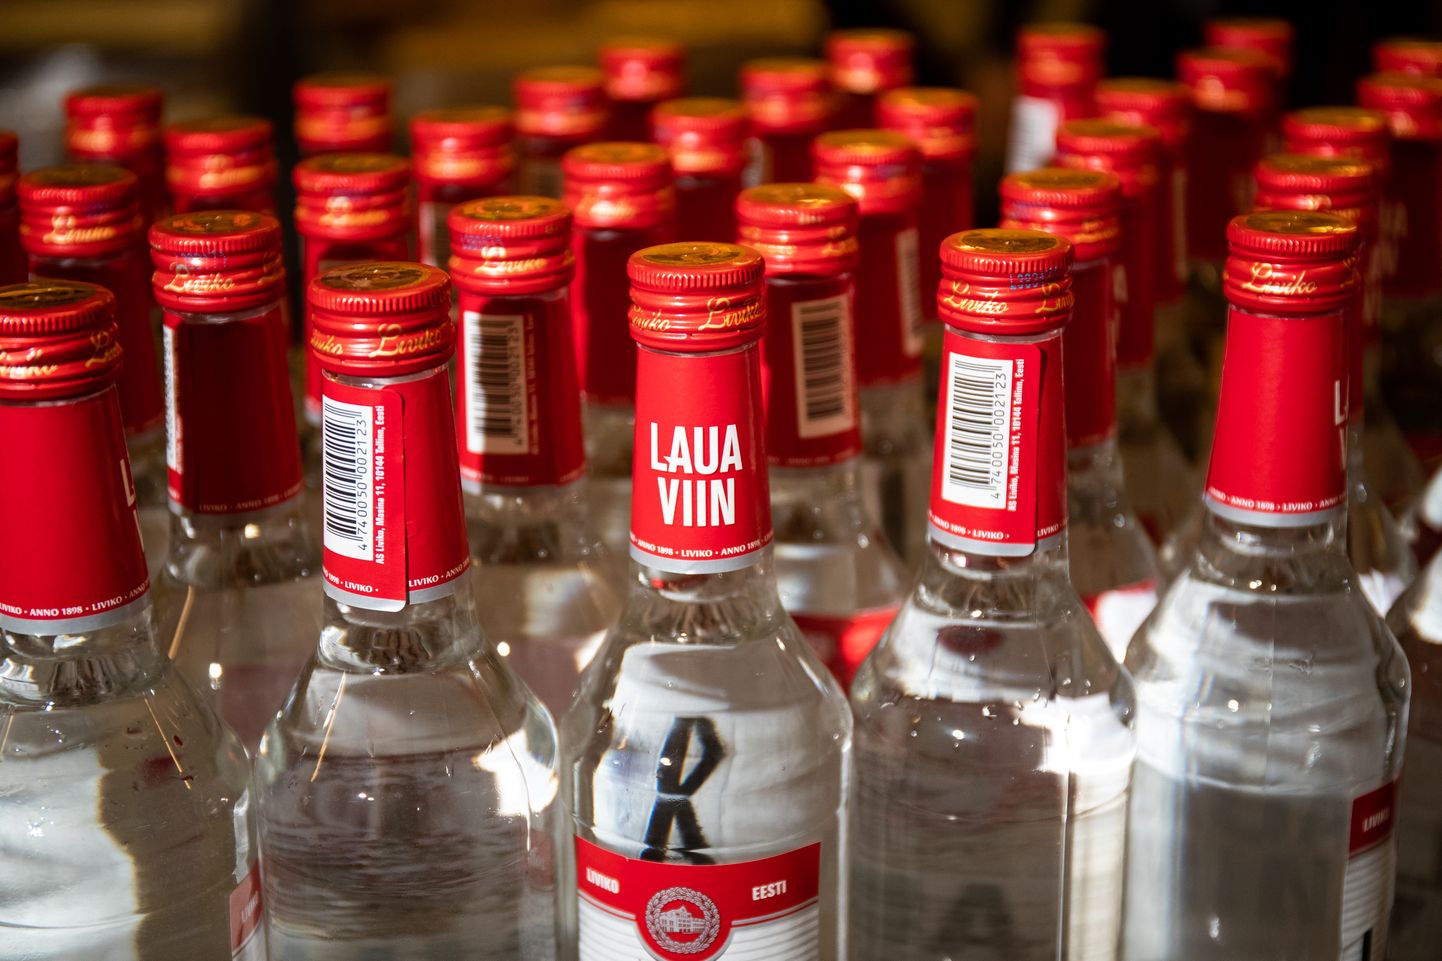 13.11.2018. Tallinn.
Liviko, Laua viina tootmine. 

Table vodka production.
FOTO: EERO VABAMÄGI/EESTI MEEDIA